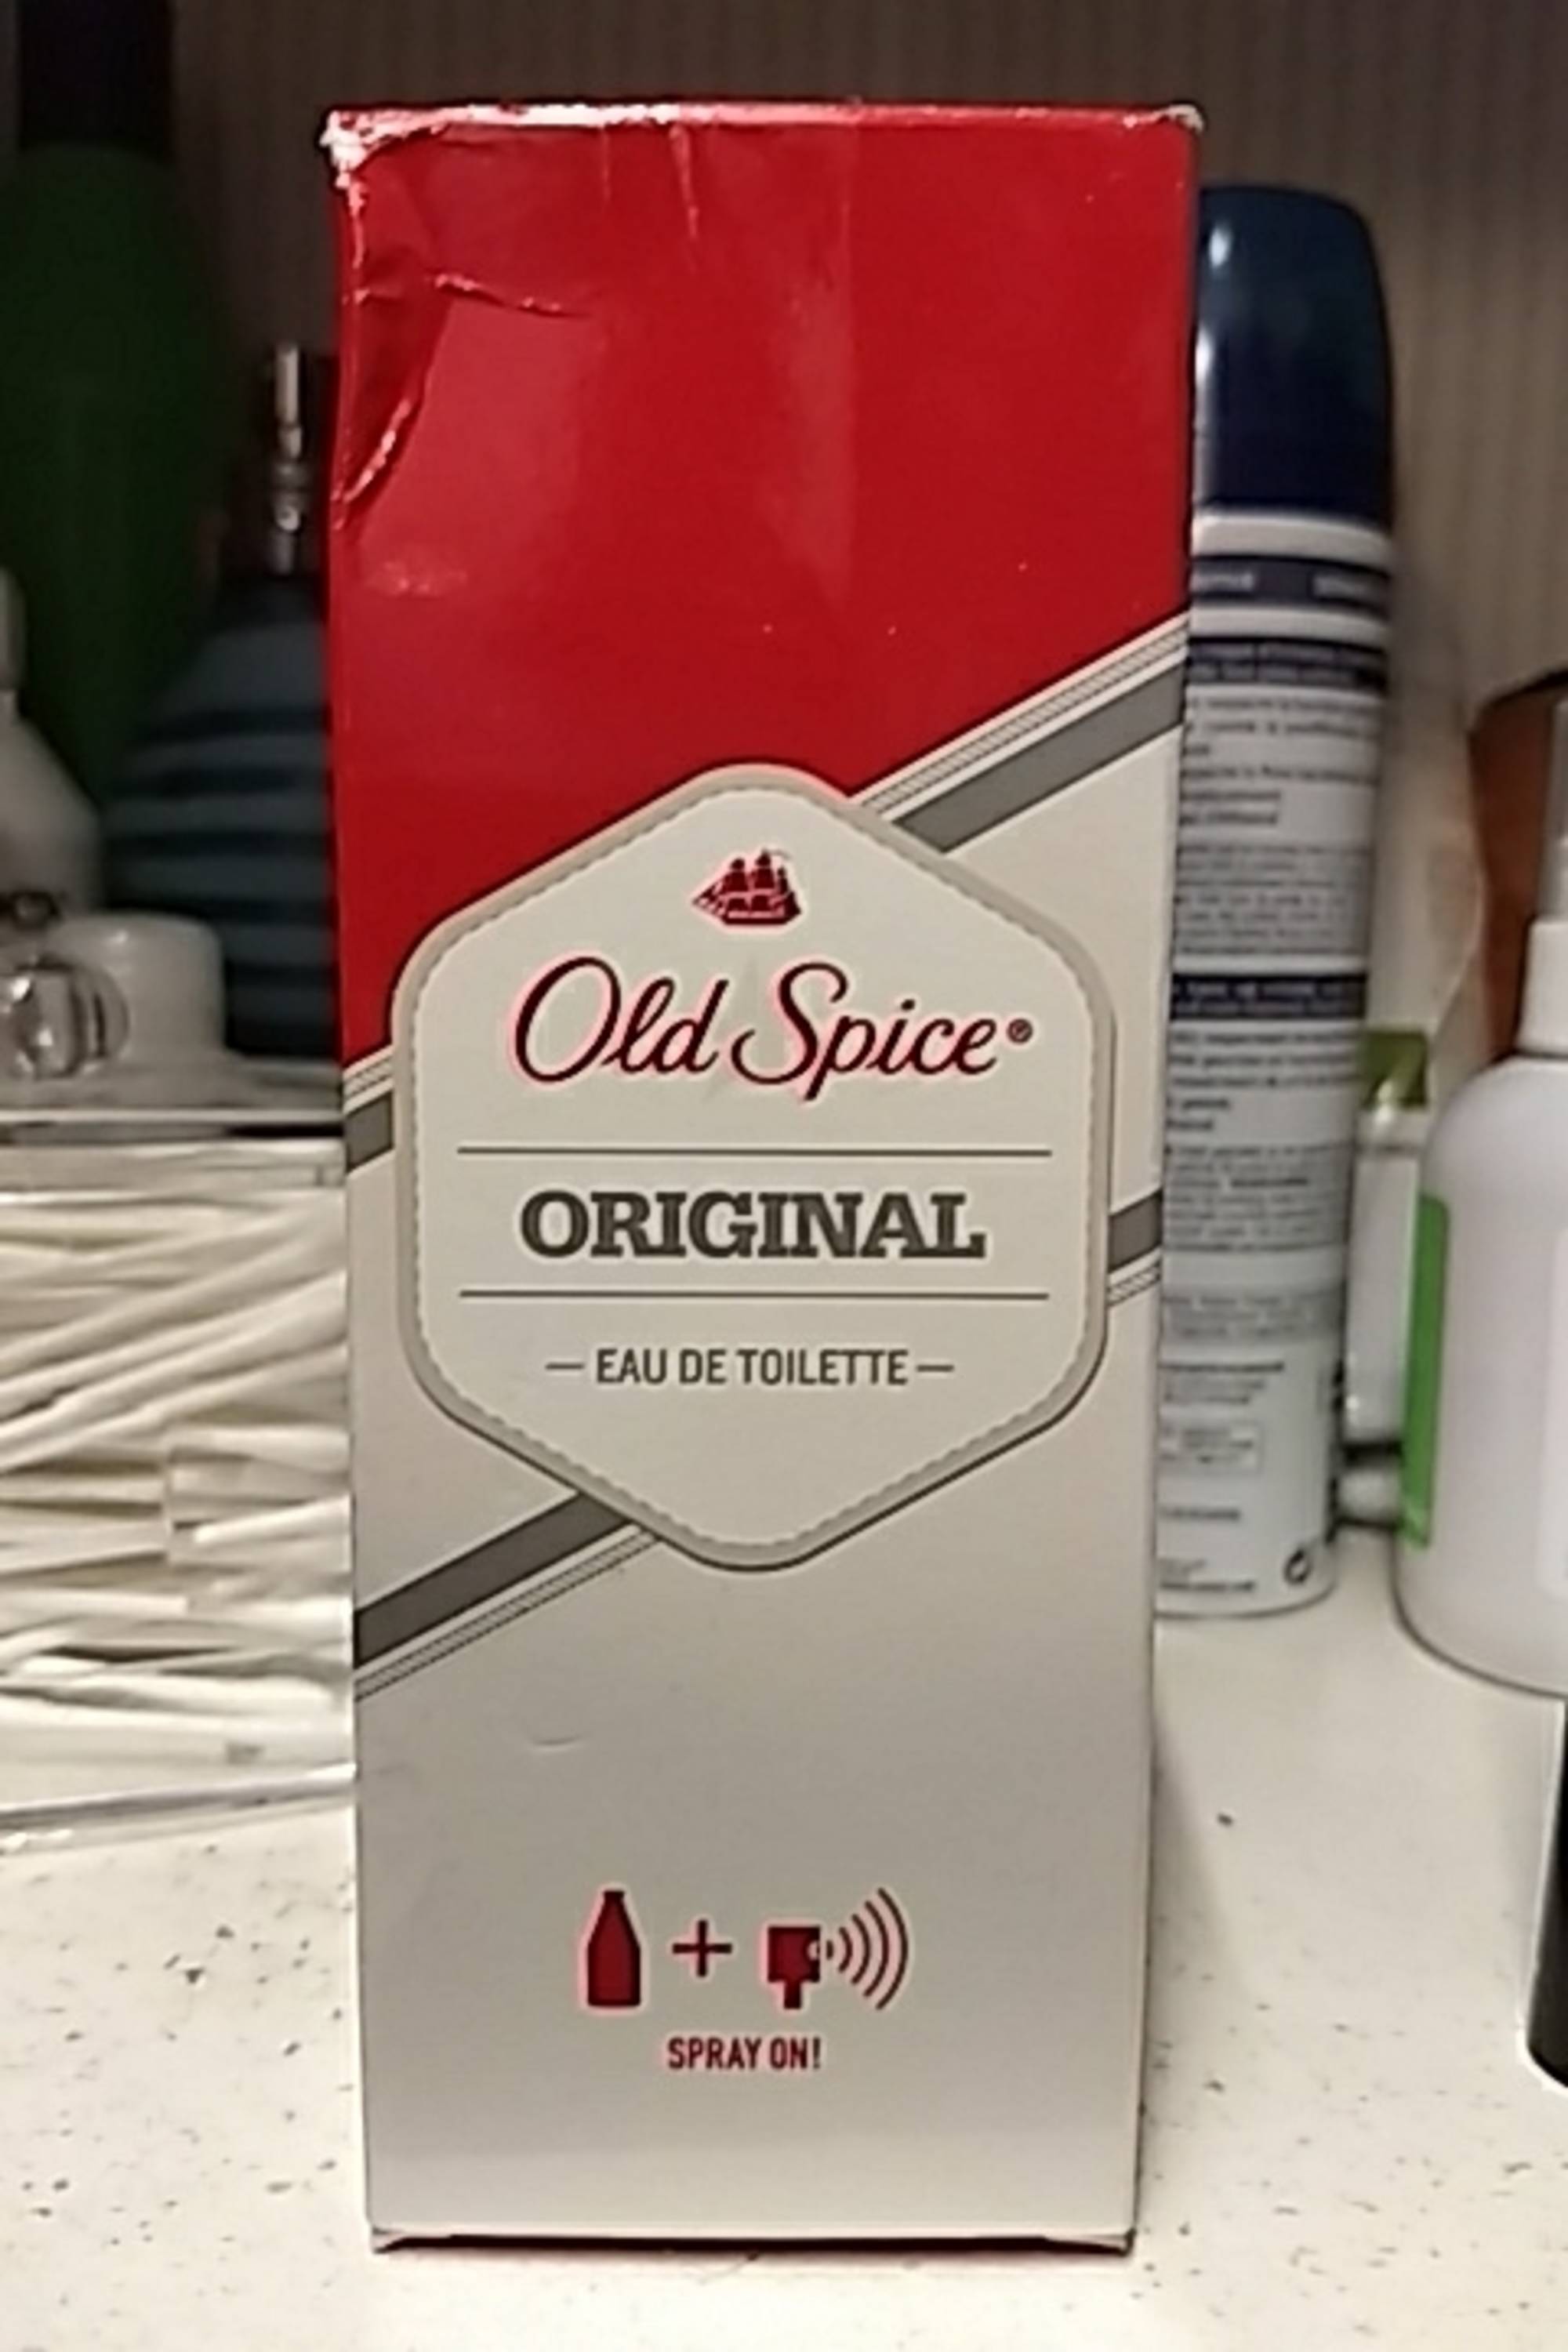 OLD SPICE - Original - Eau de toilette